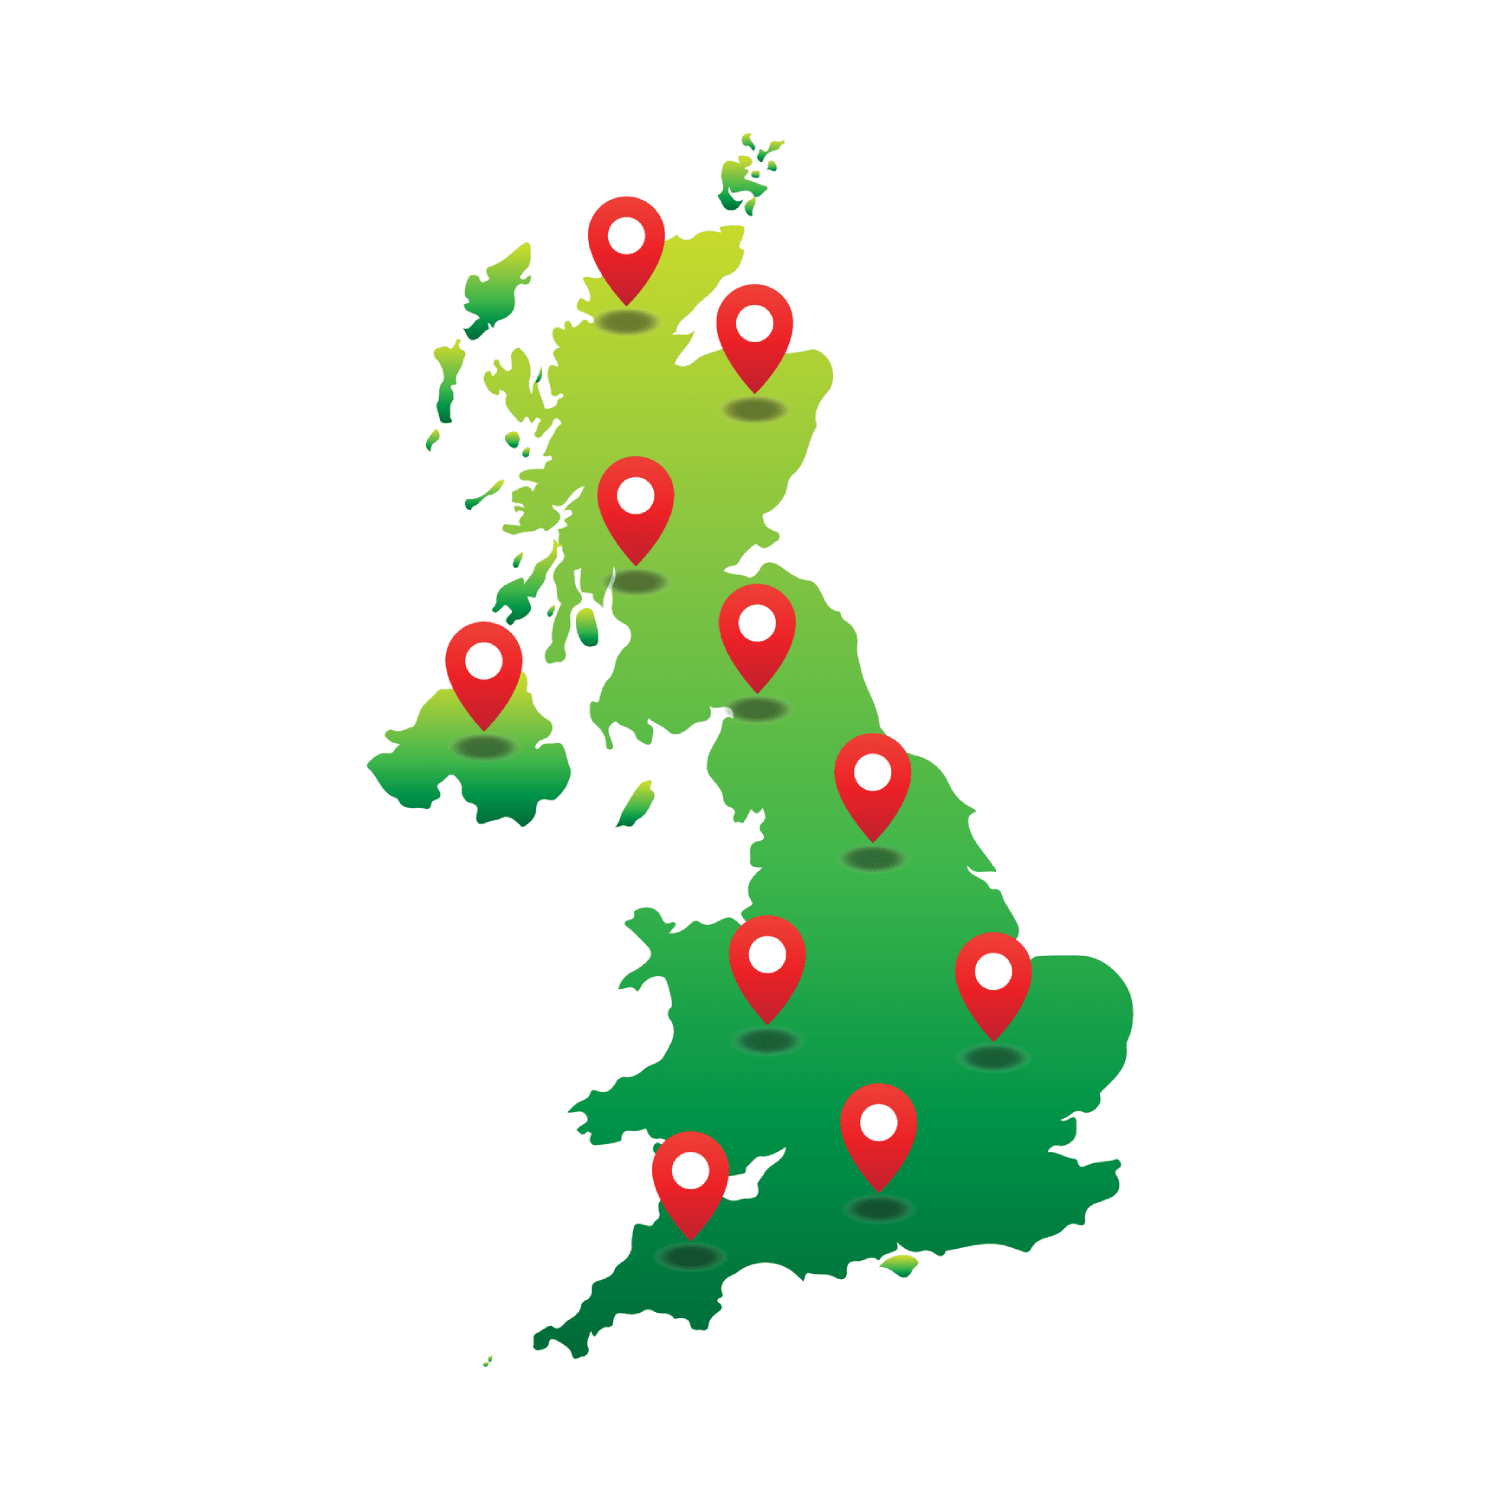 Gardener across the UK